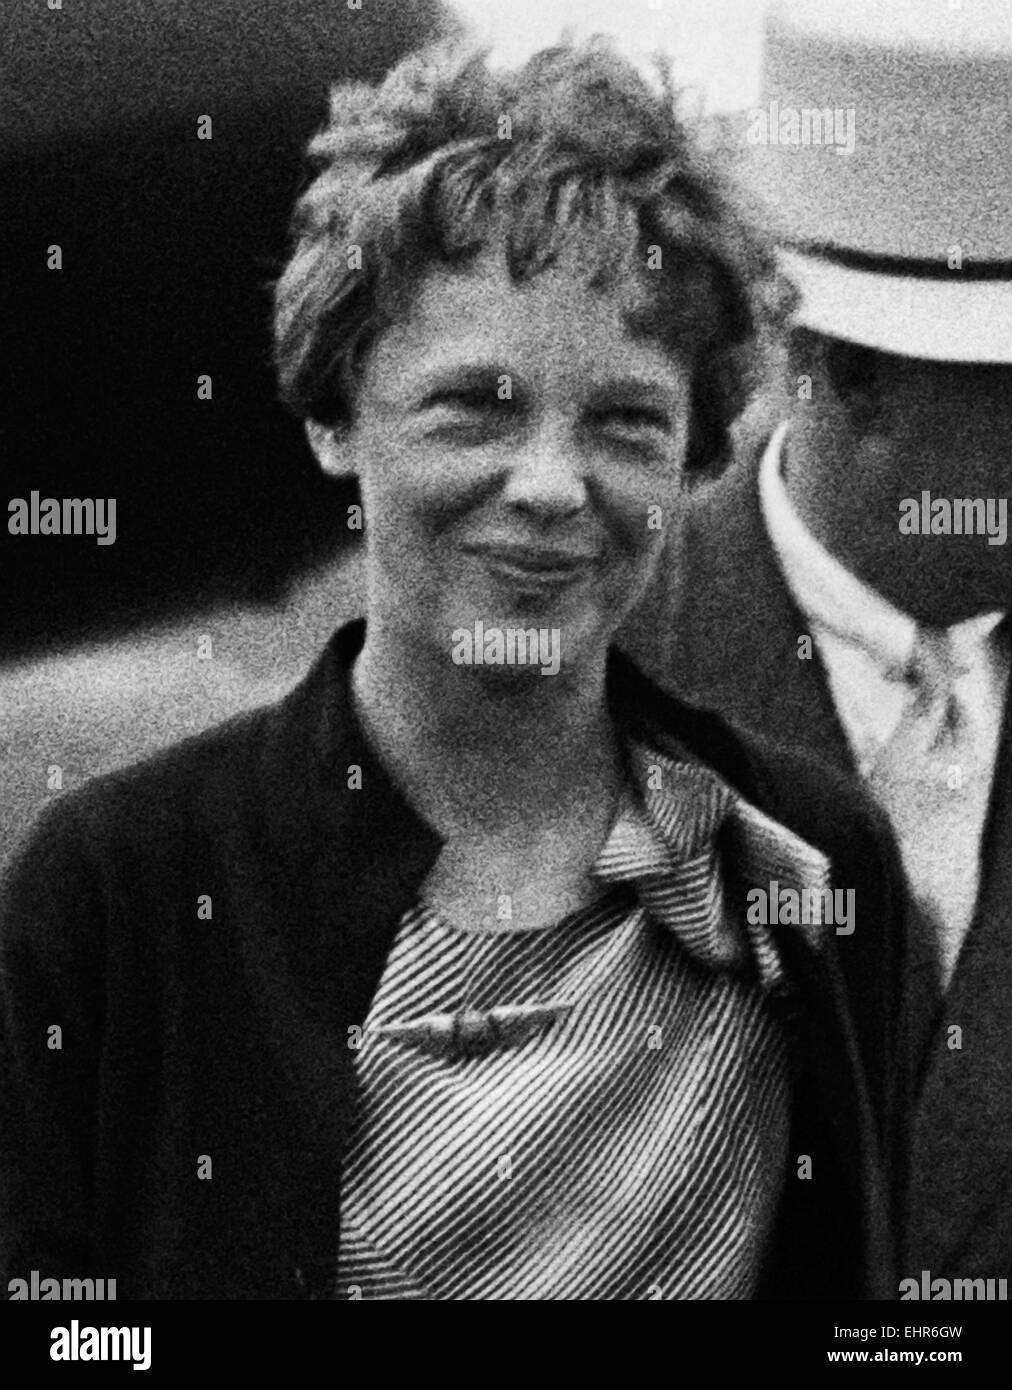 Foto d'epoca della pioniera e autrice dell'aviazione americana Amelia Earhart (1897 – dichiarata morta nel 1939) – Earthart e il suo navigatore Fred Noonan sono scomparsi nel 1937 mentre stava cercando di diventare la prima donna a completare un volo circumnavigazionale del globo. Foto di Harris & Ewing scattata nel 1932. Foto Stock